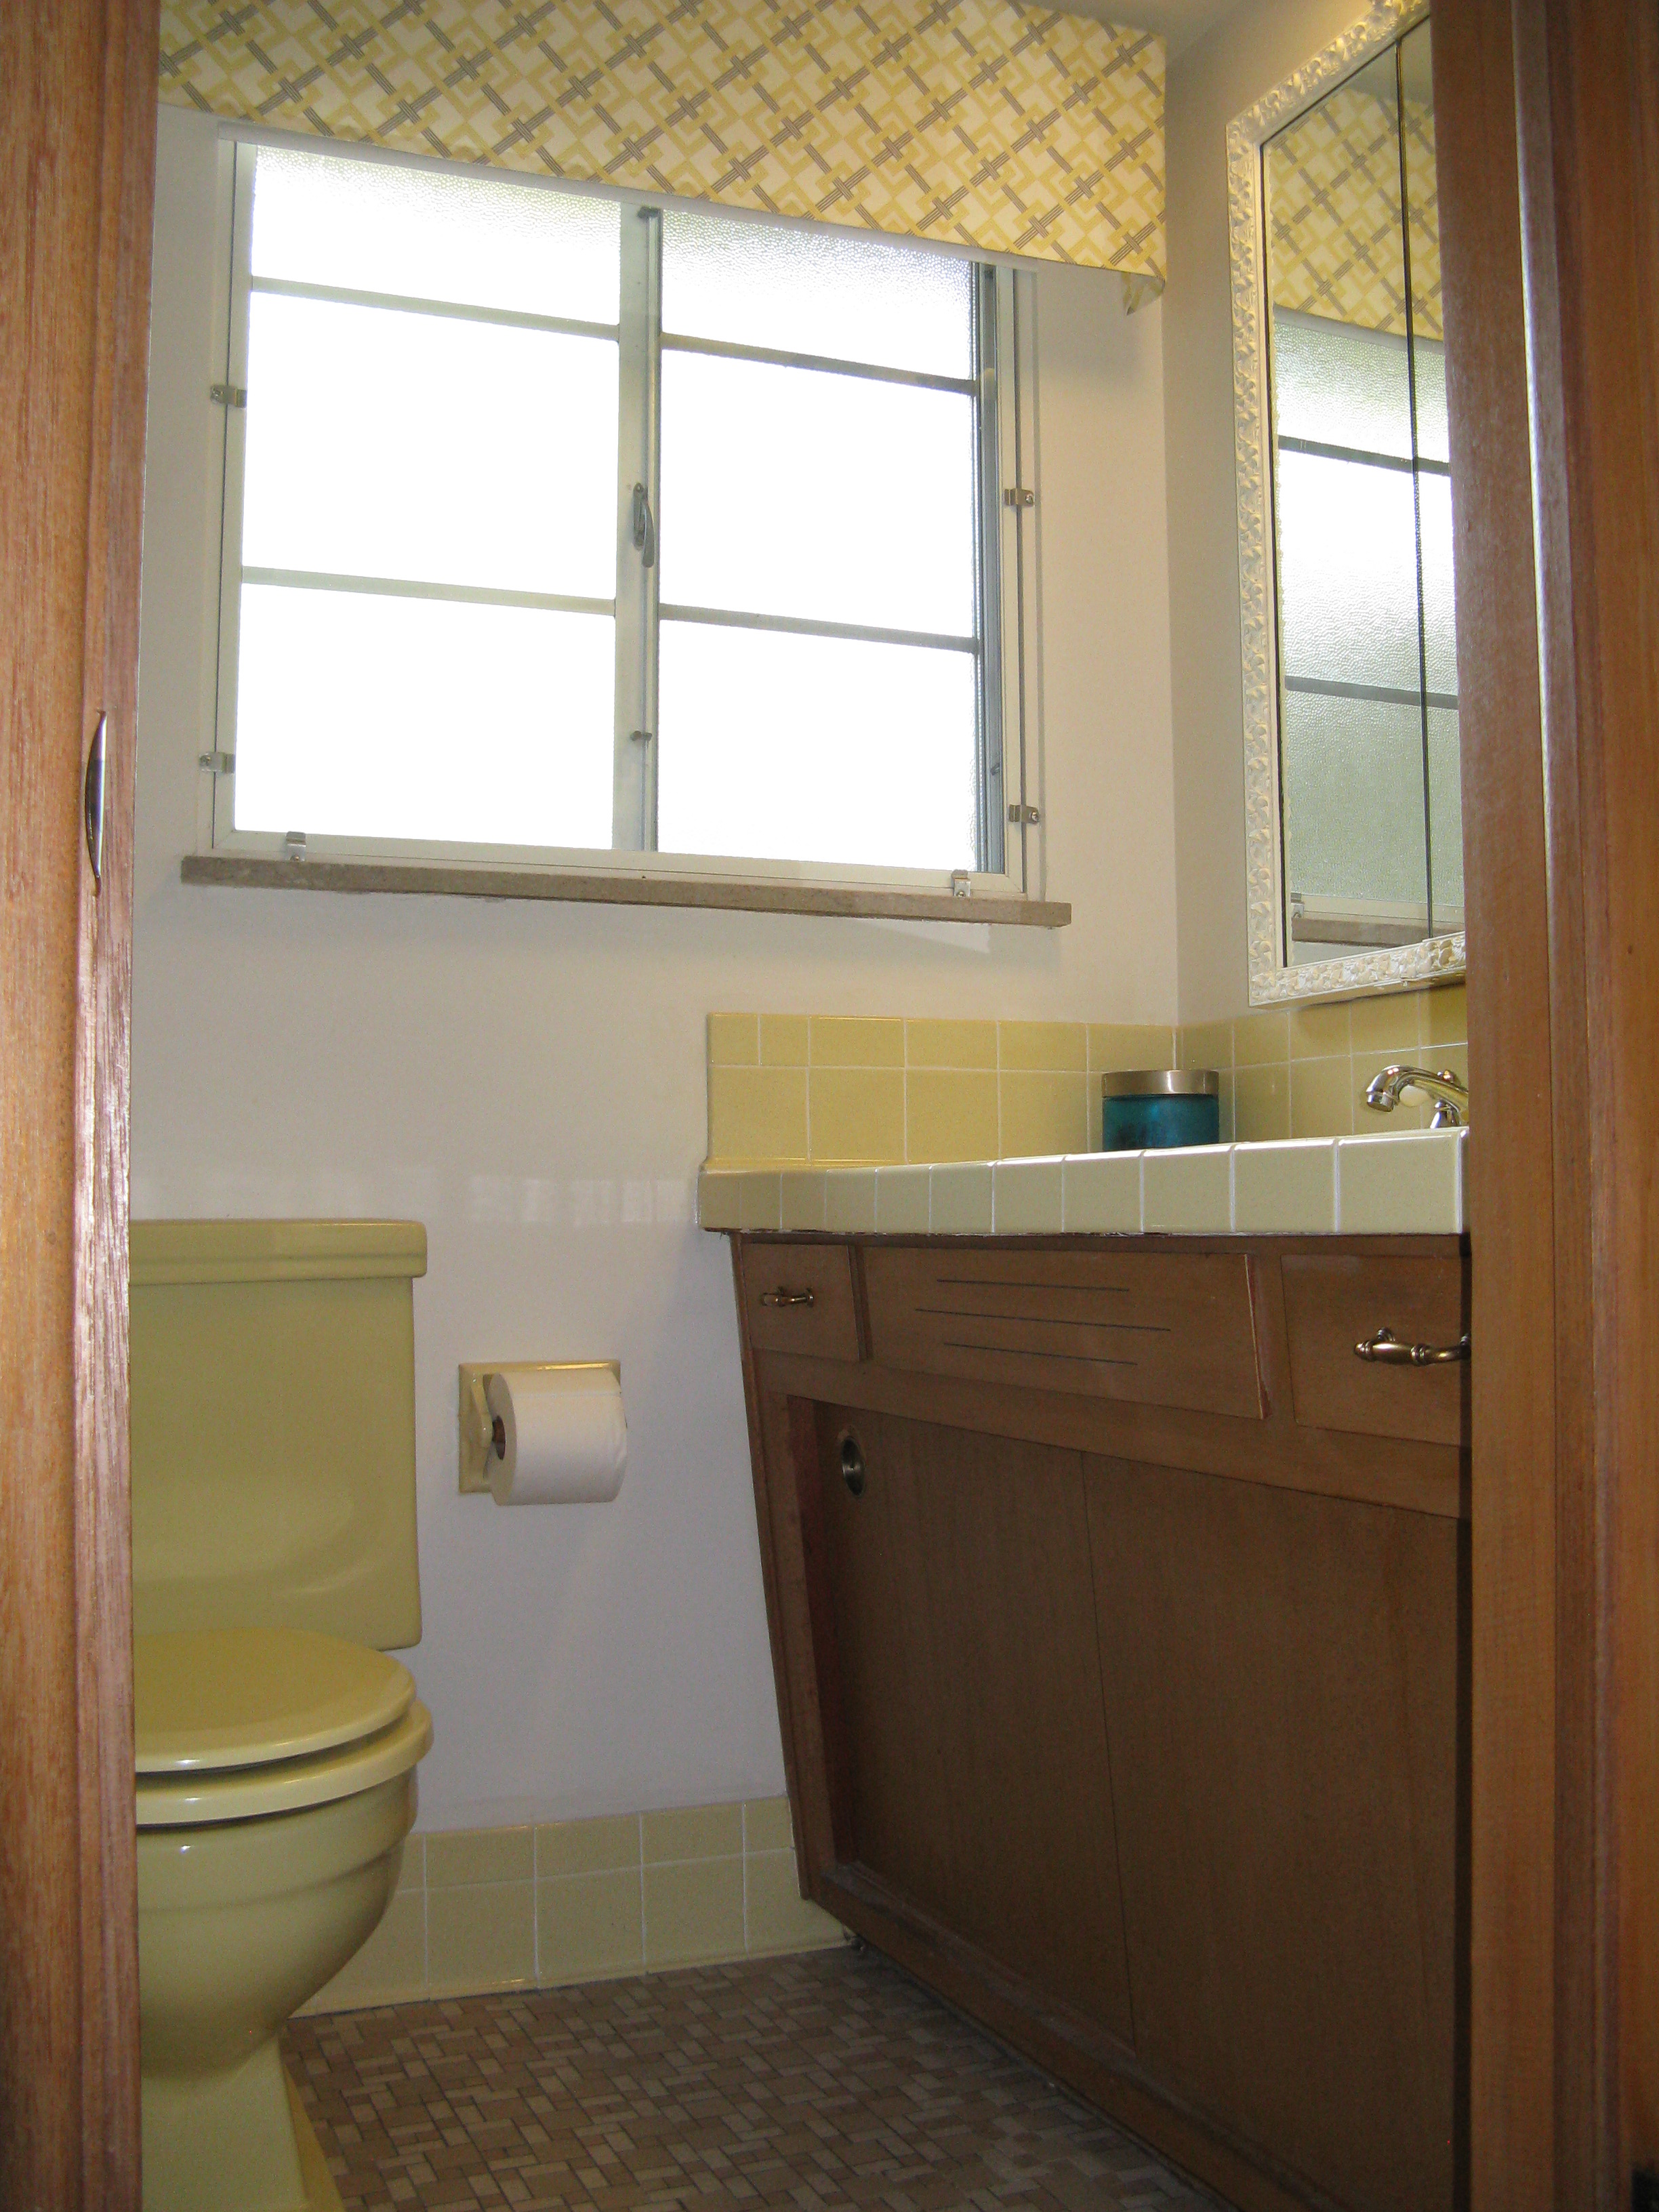 vintage-bathroom-tile